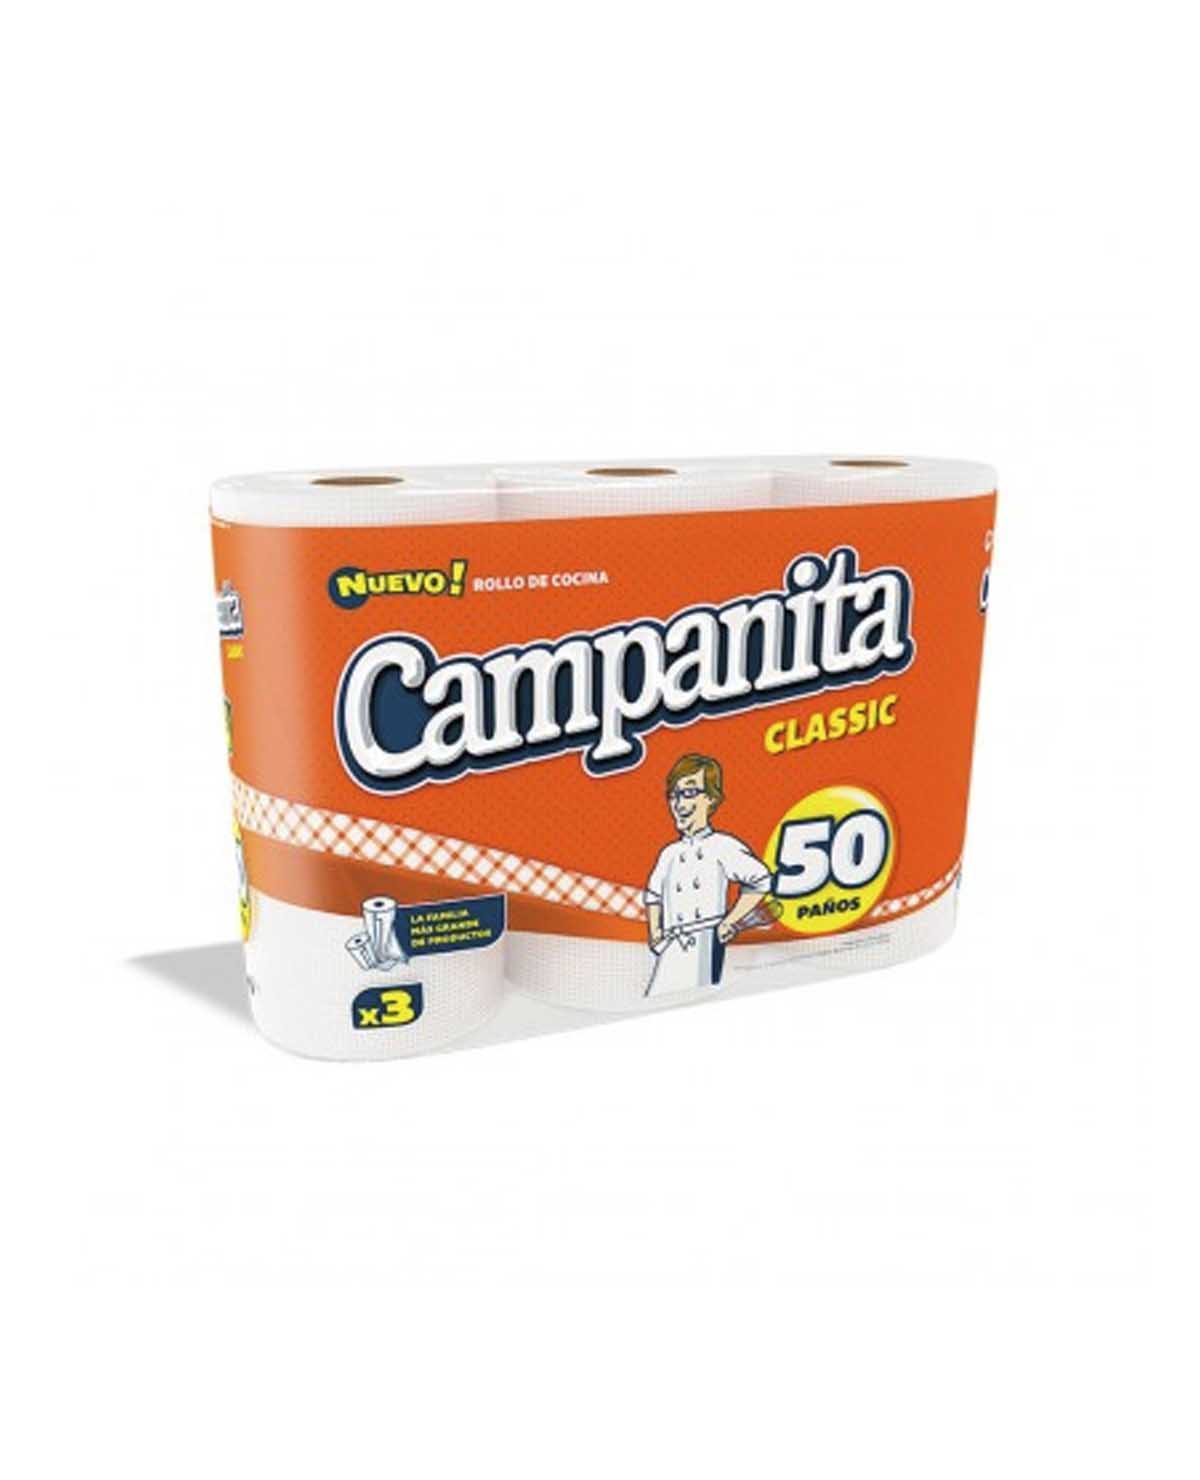 Rollo de Cocina Campanita Classic 3x50 Paños